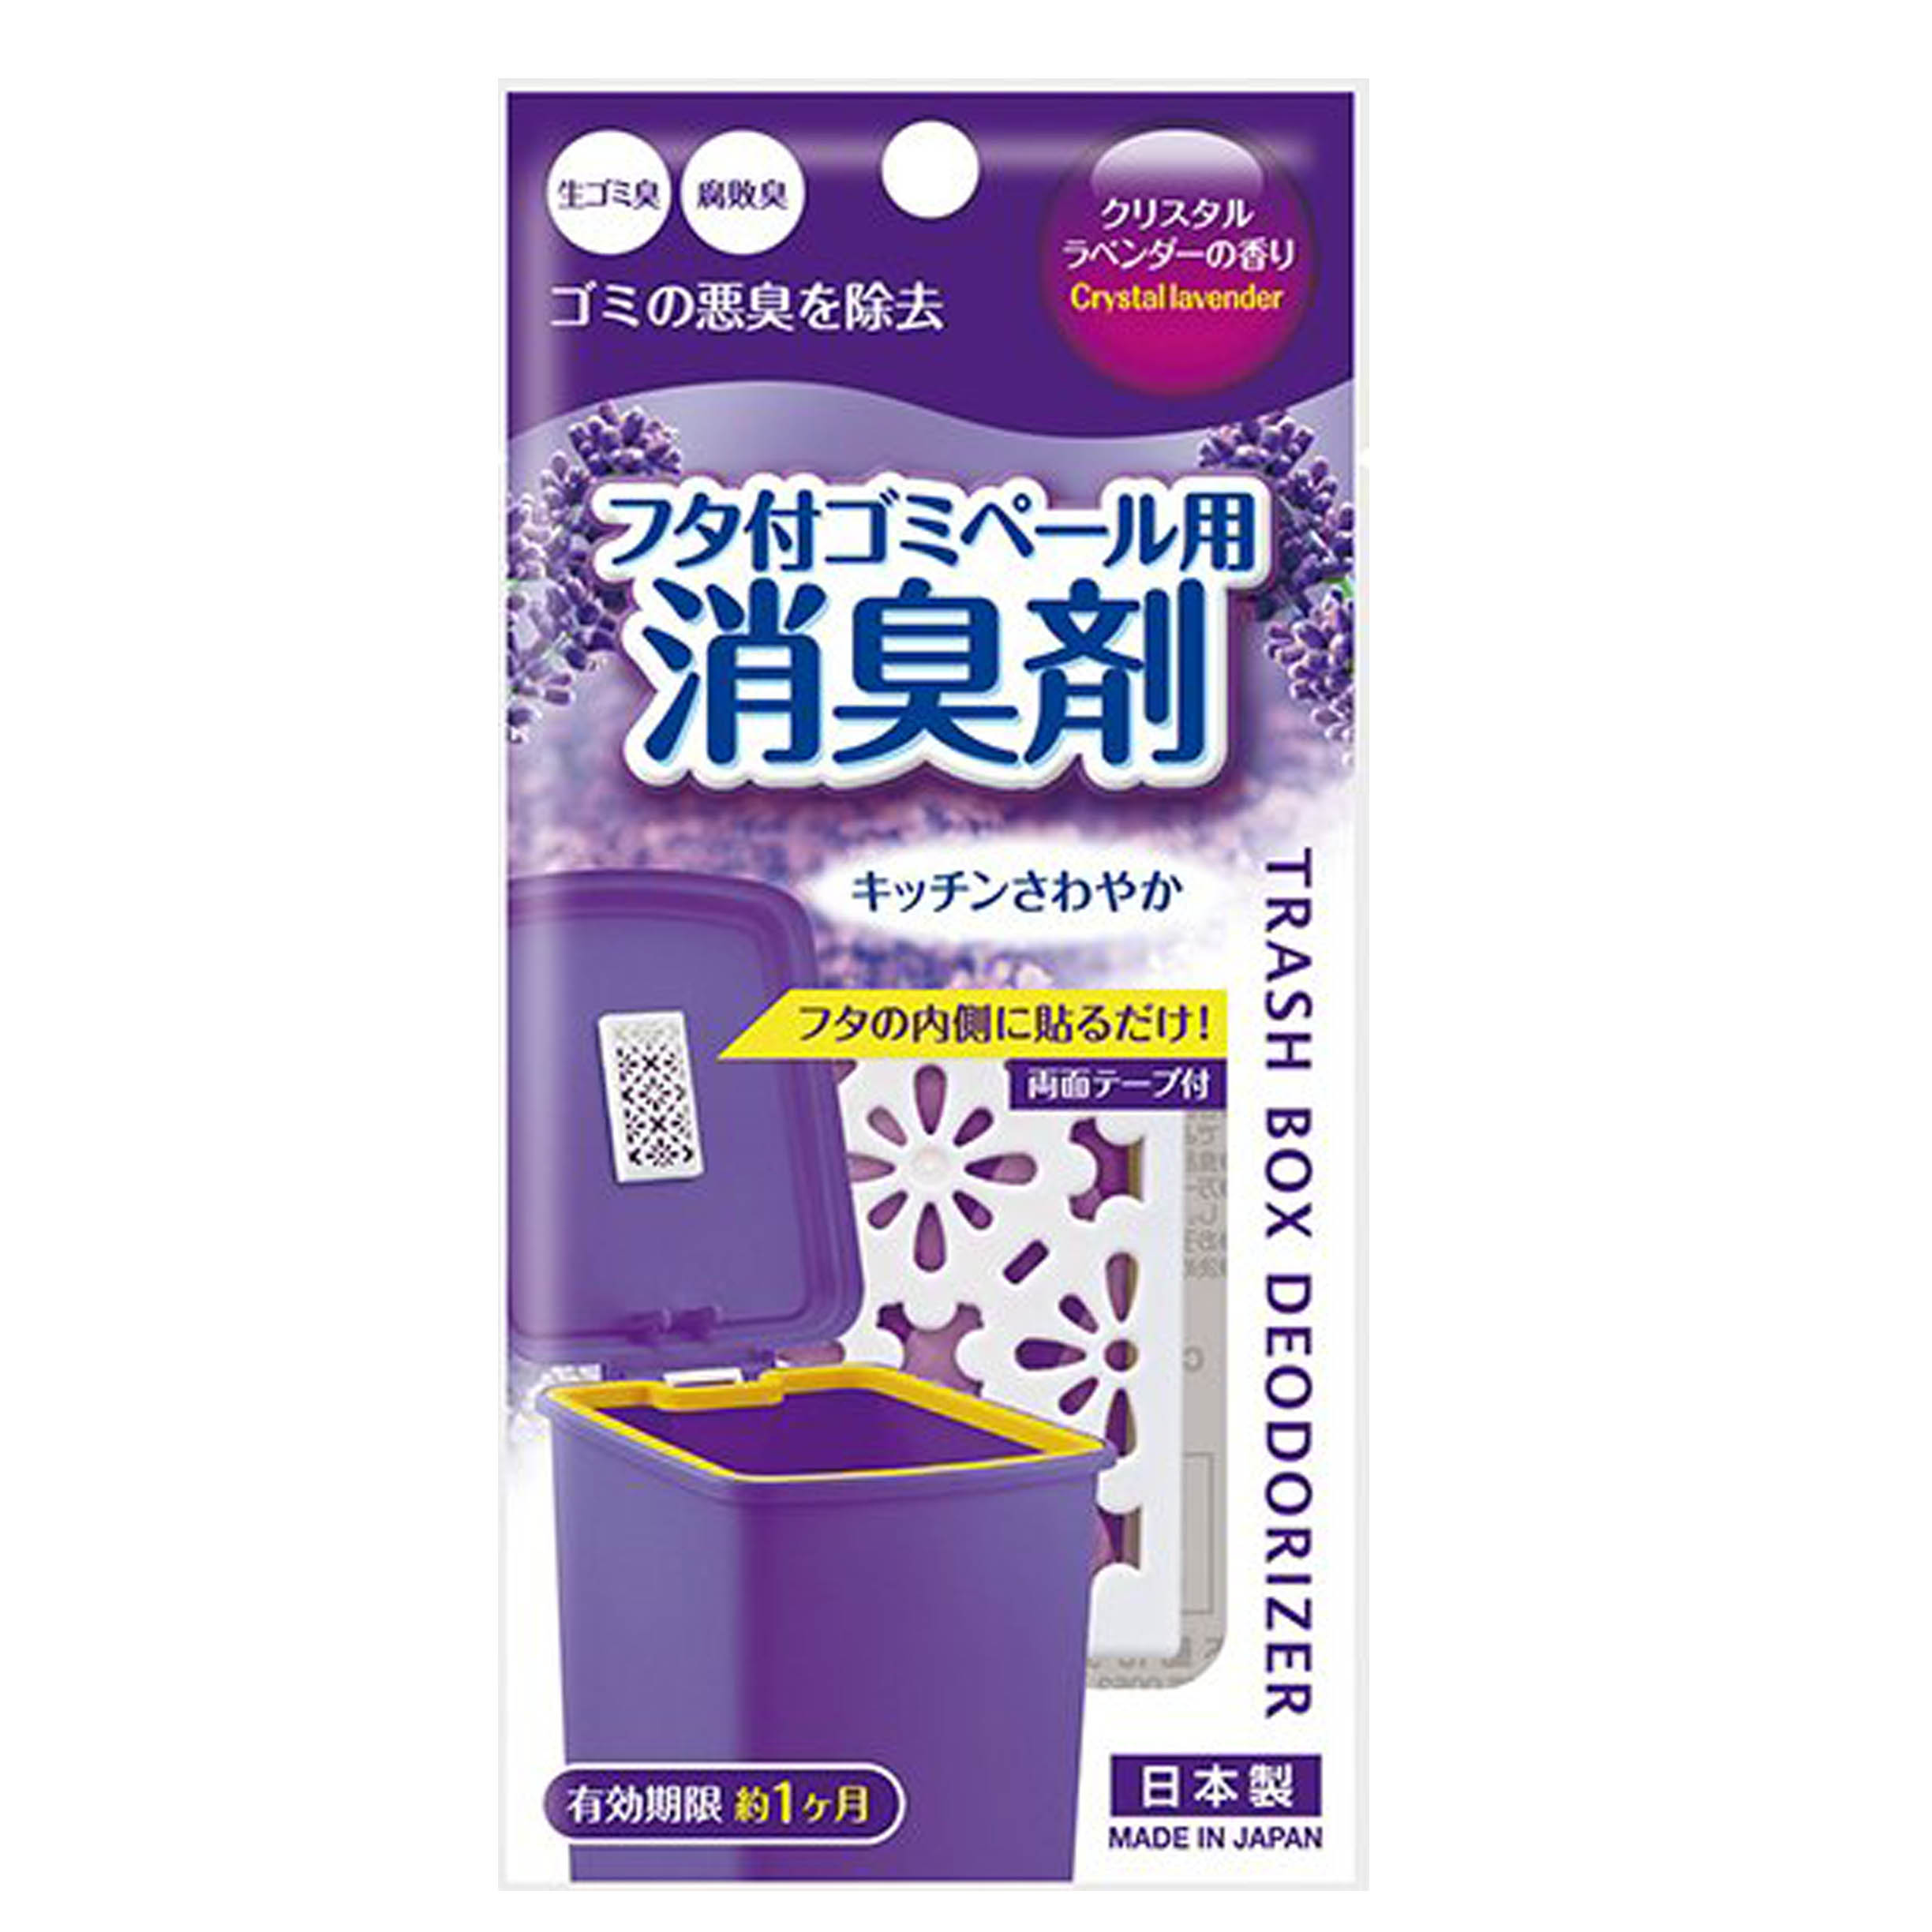 垃圾桶除臭貼片-薰衣草香 不動化學株式會社 日本製造進口